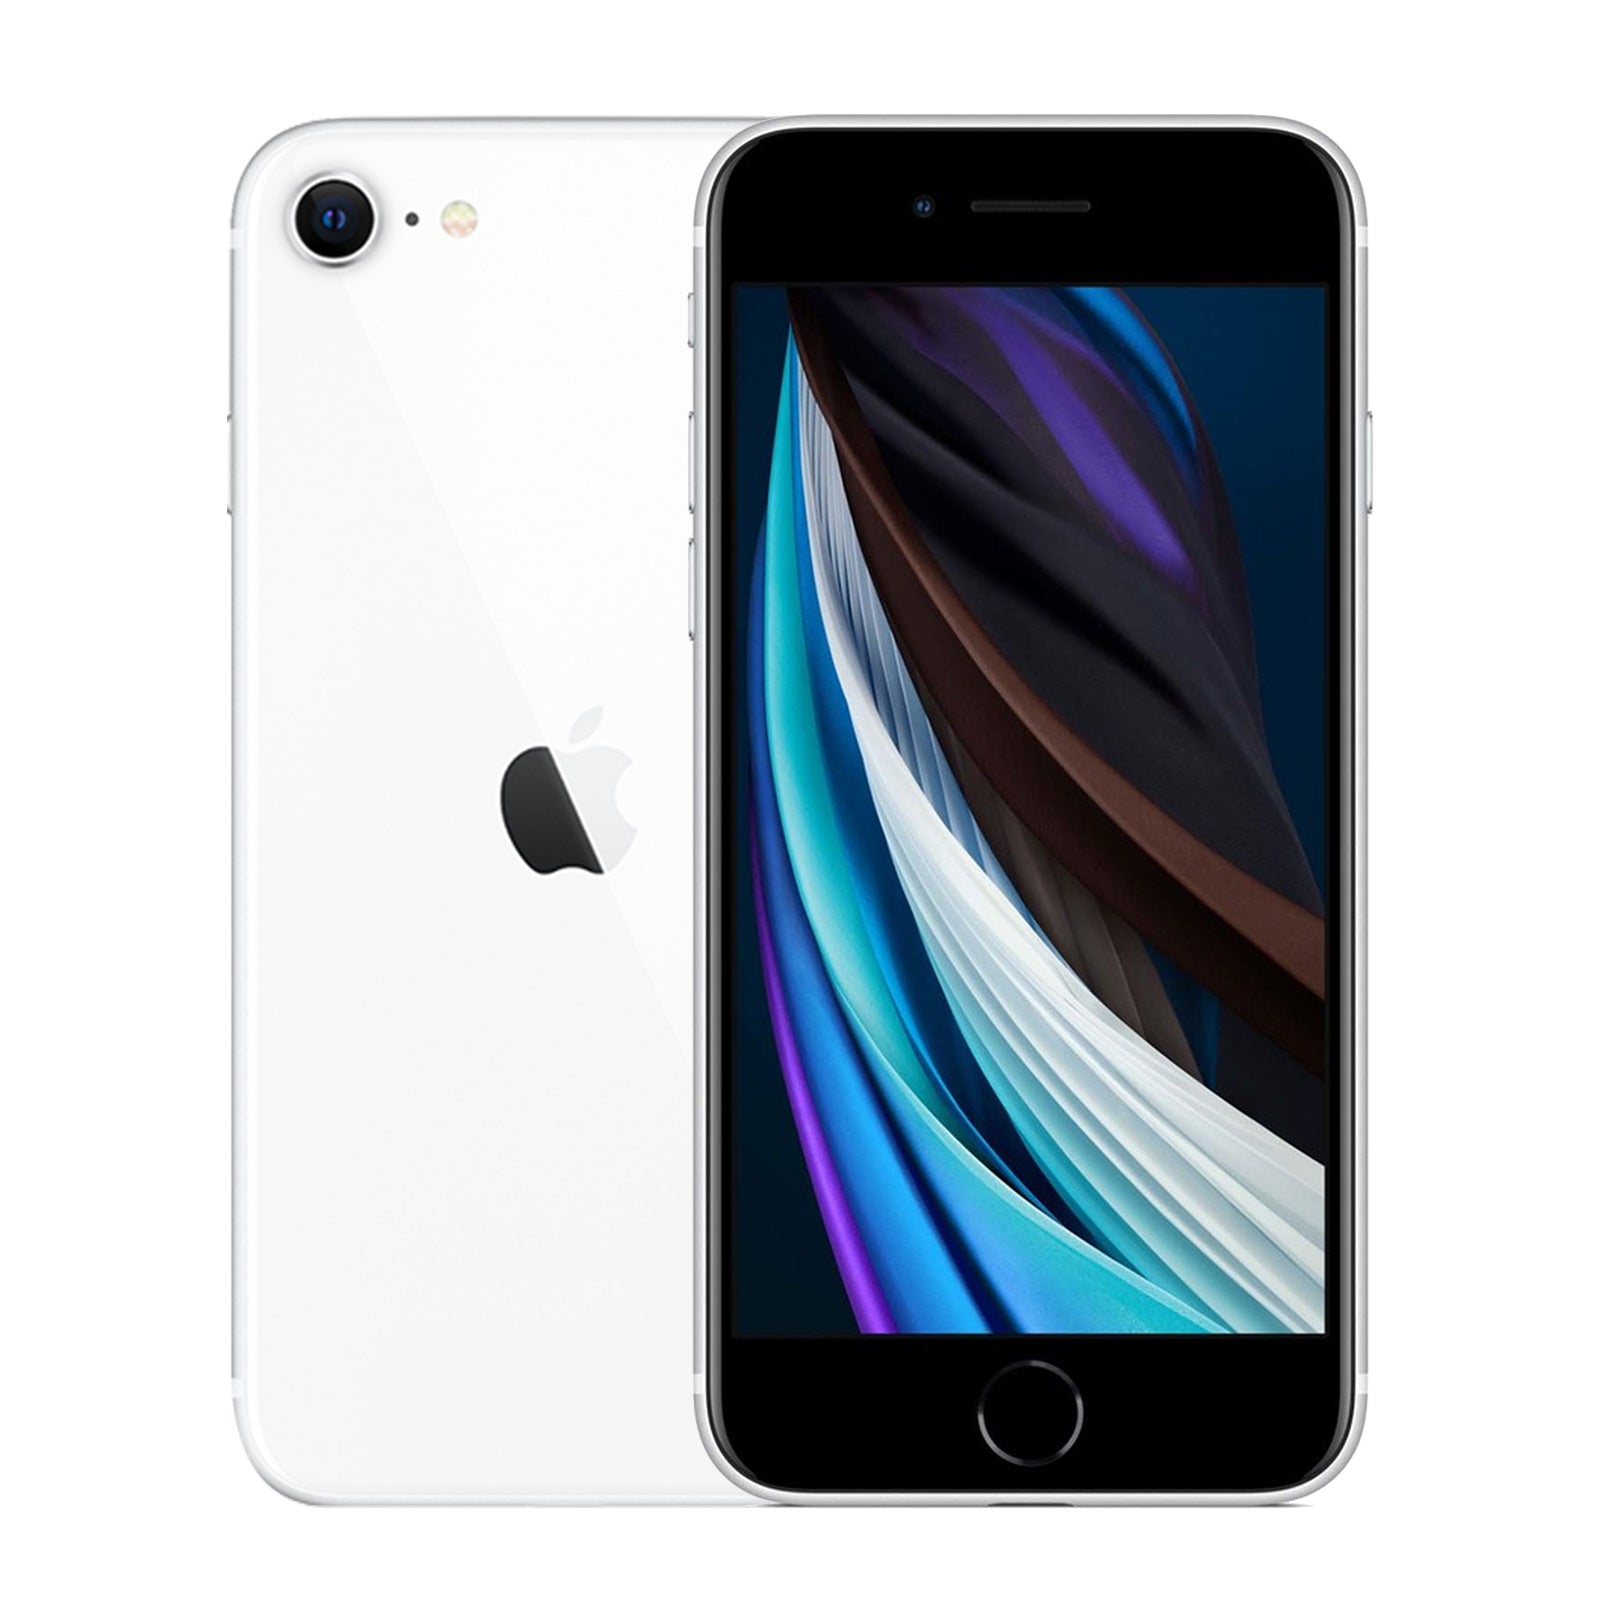 Apple iPhone SE 2nd Gen 128GB White Good Sprint